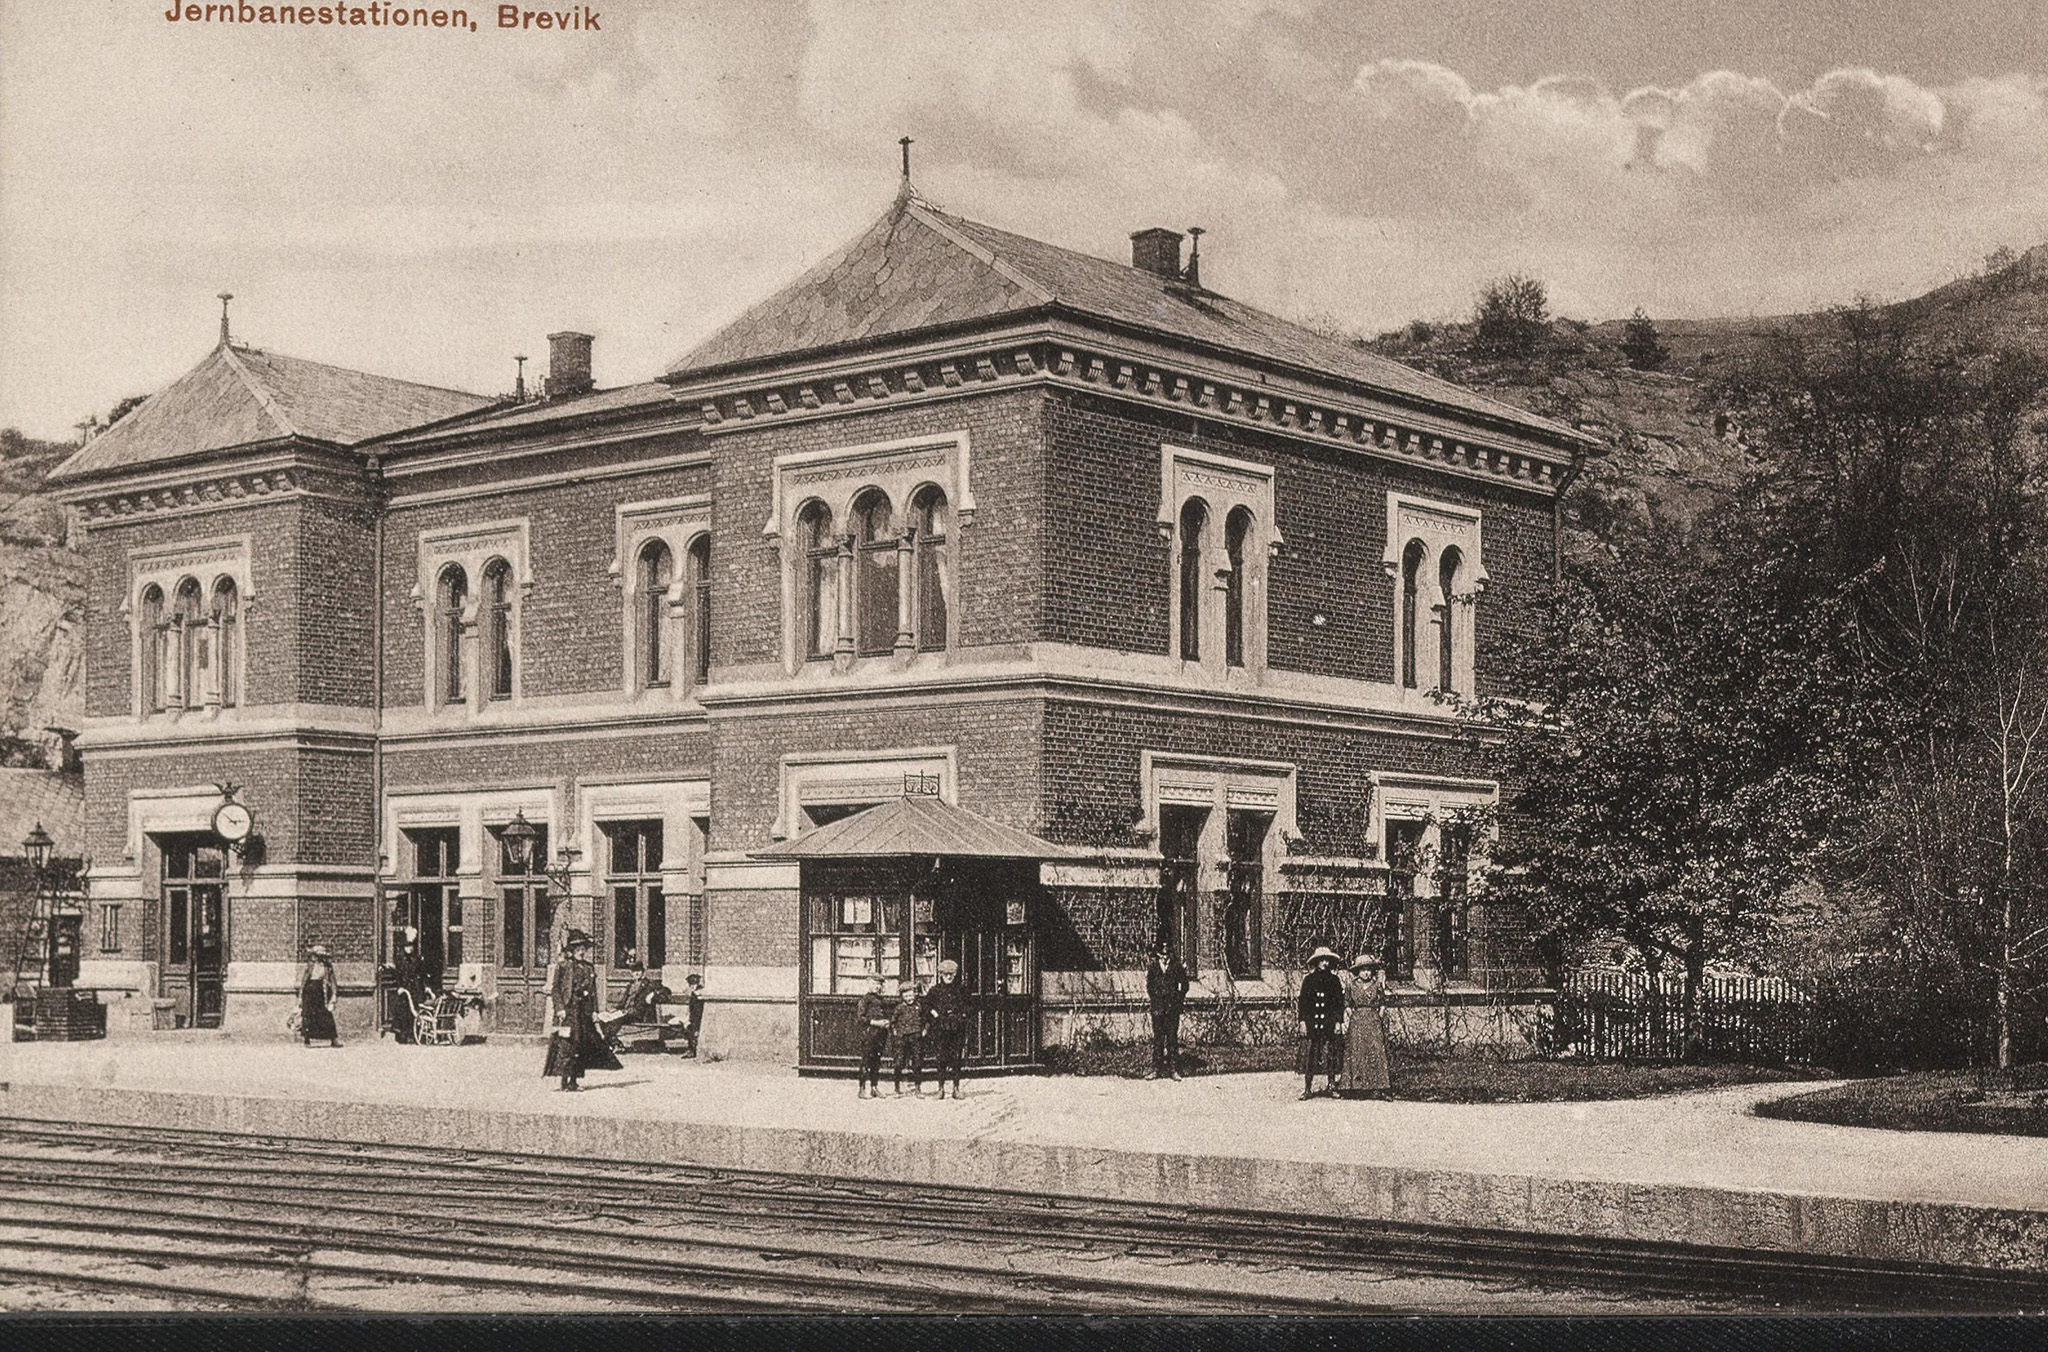 1900 - Brevik Jernbanesjasjon